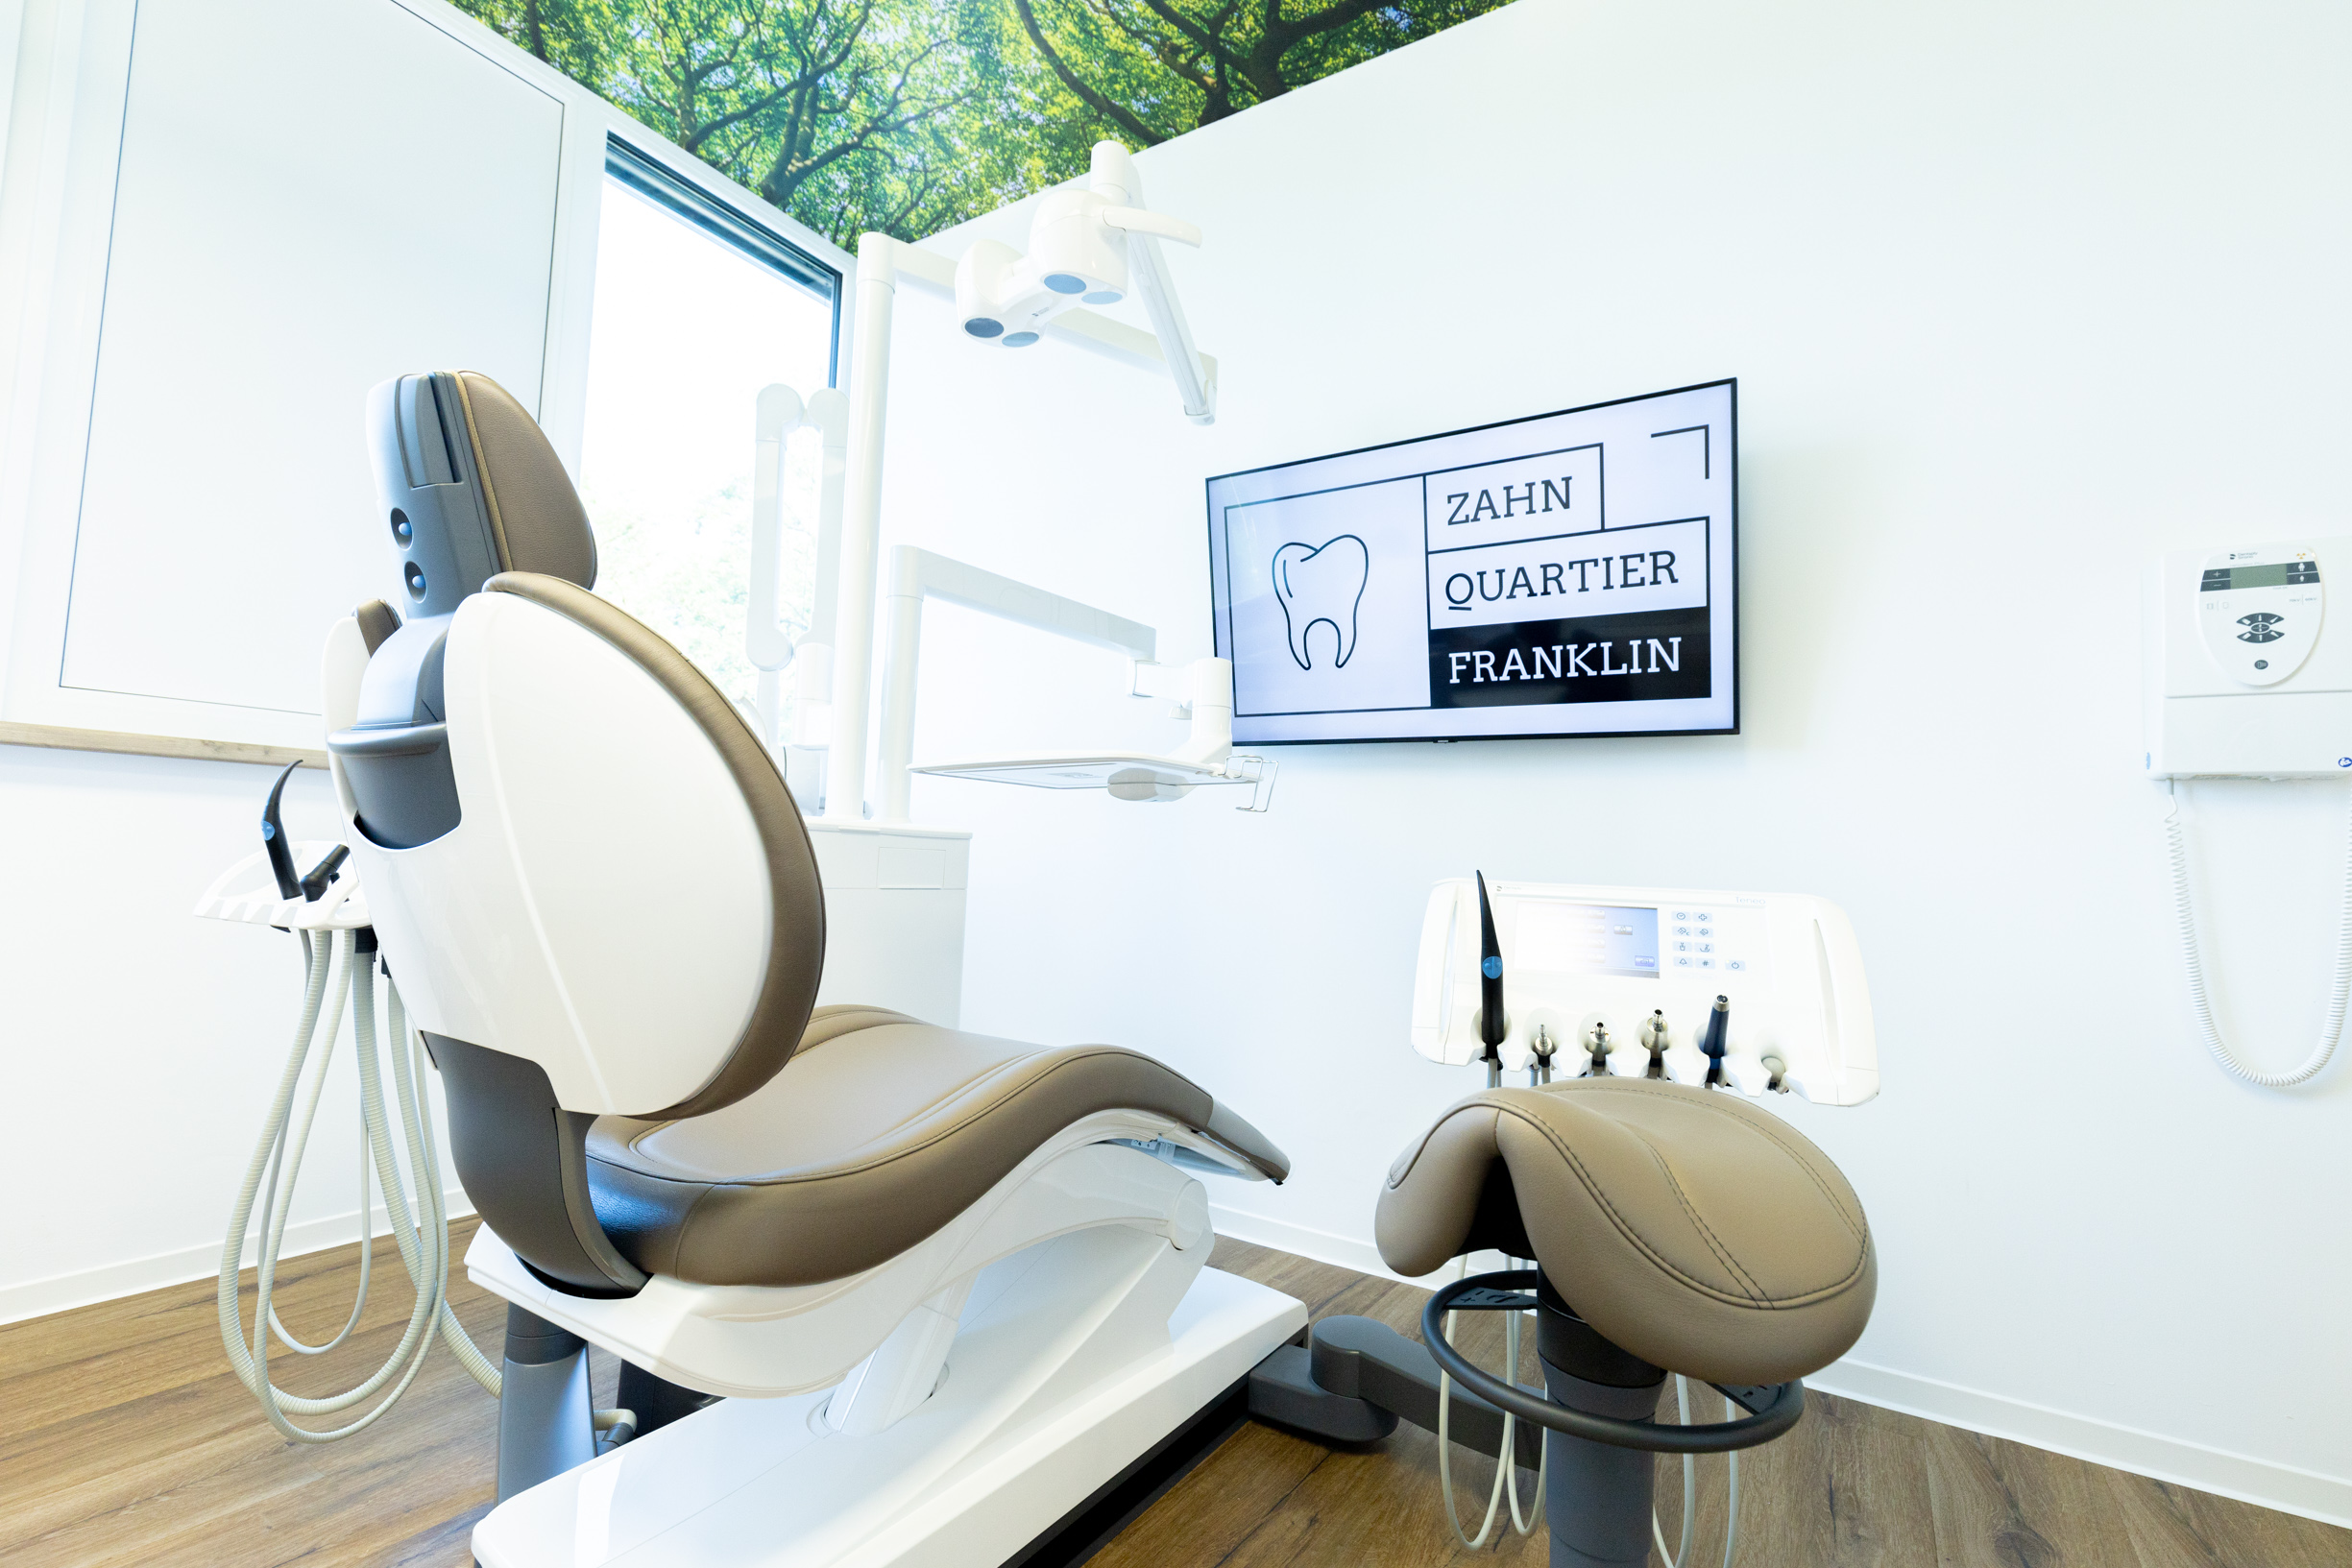 Behandlungsraum modern Zahnarzt Zahnquartier Franklin